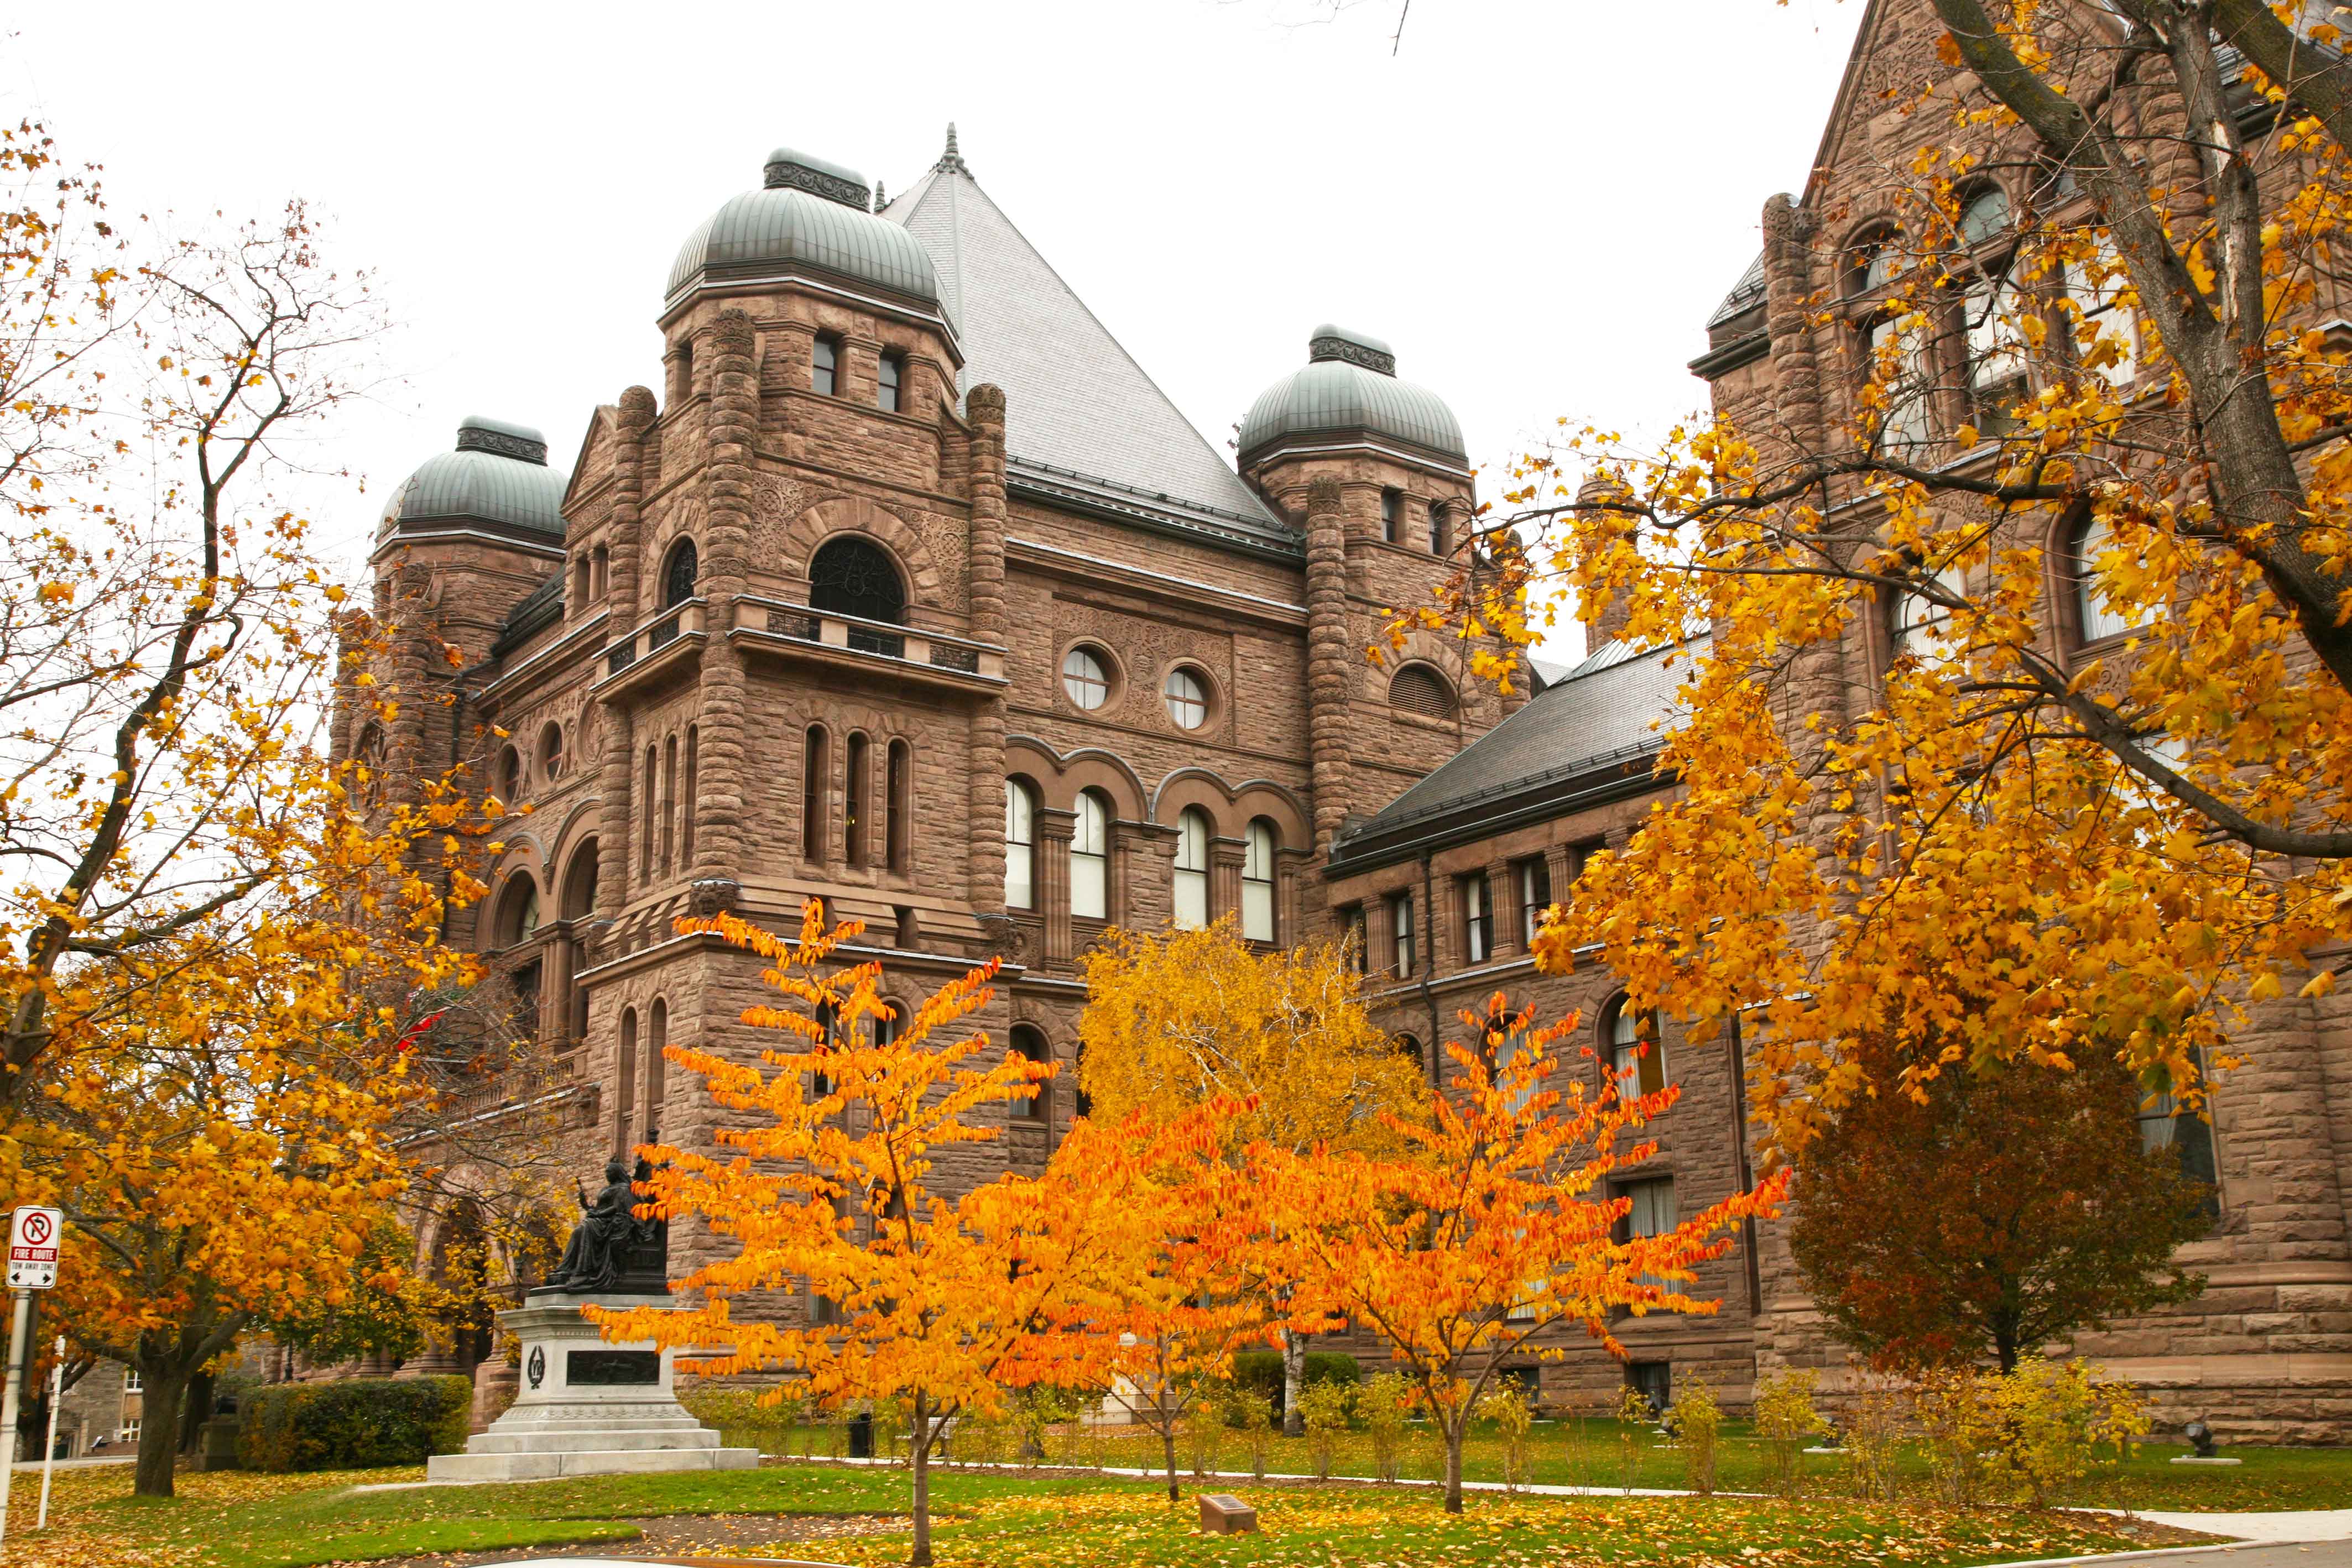 L'extérieur du bâtiment législatif à l'automne, entouré de feuillage orange.